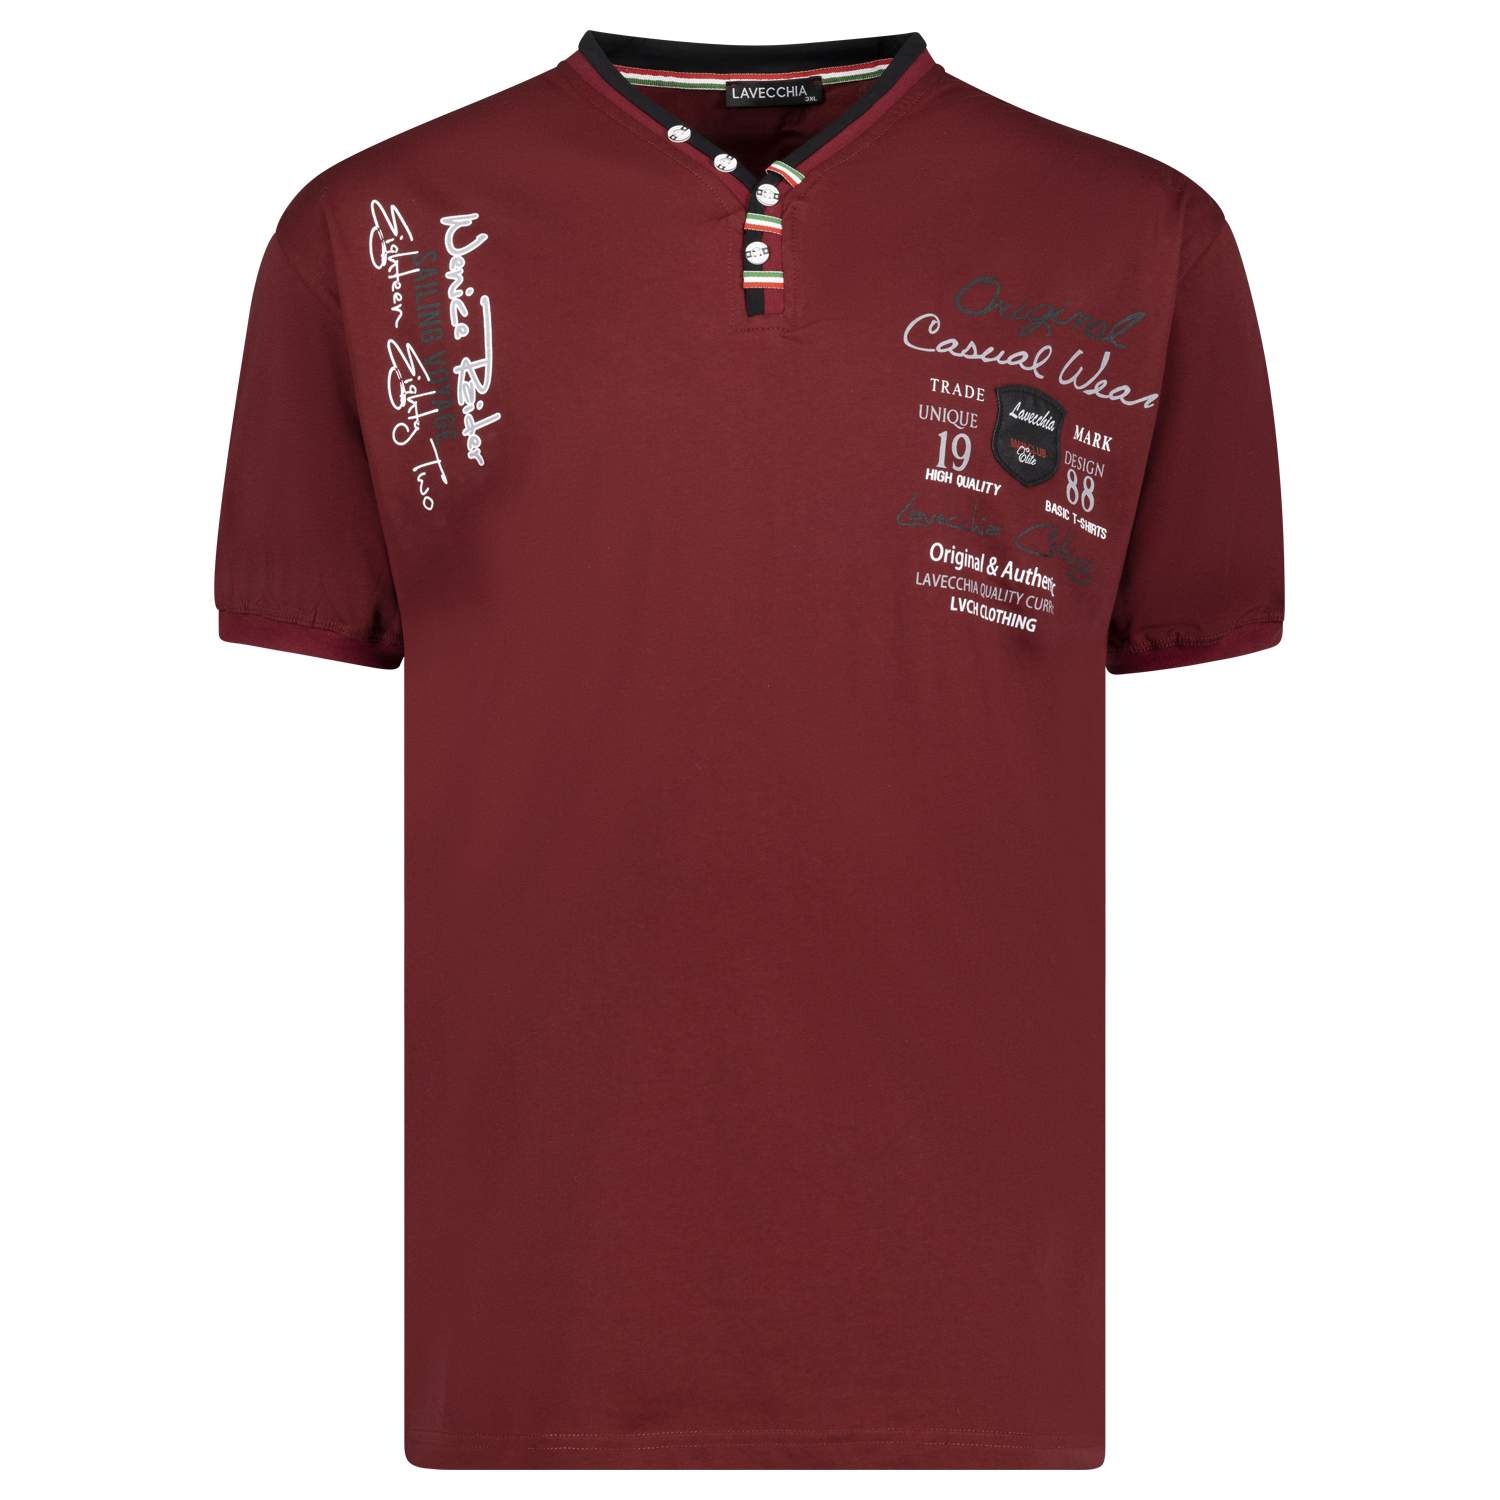 T-Shirt bordeaux von Lavecchia in Übergrößen bis 8XL